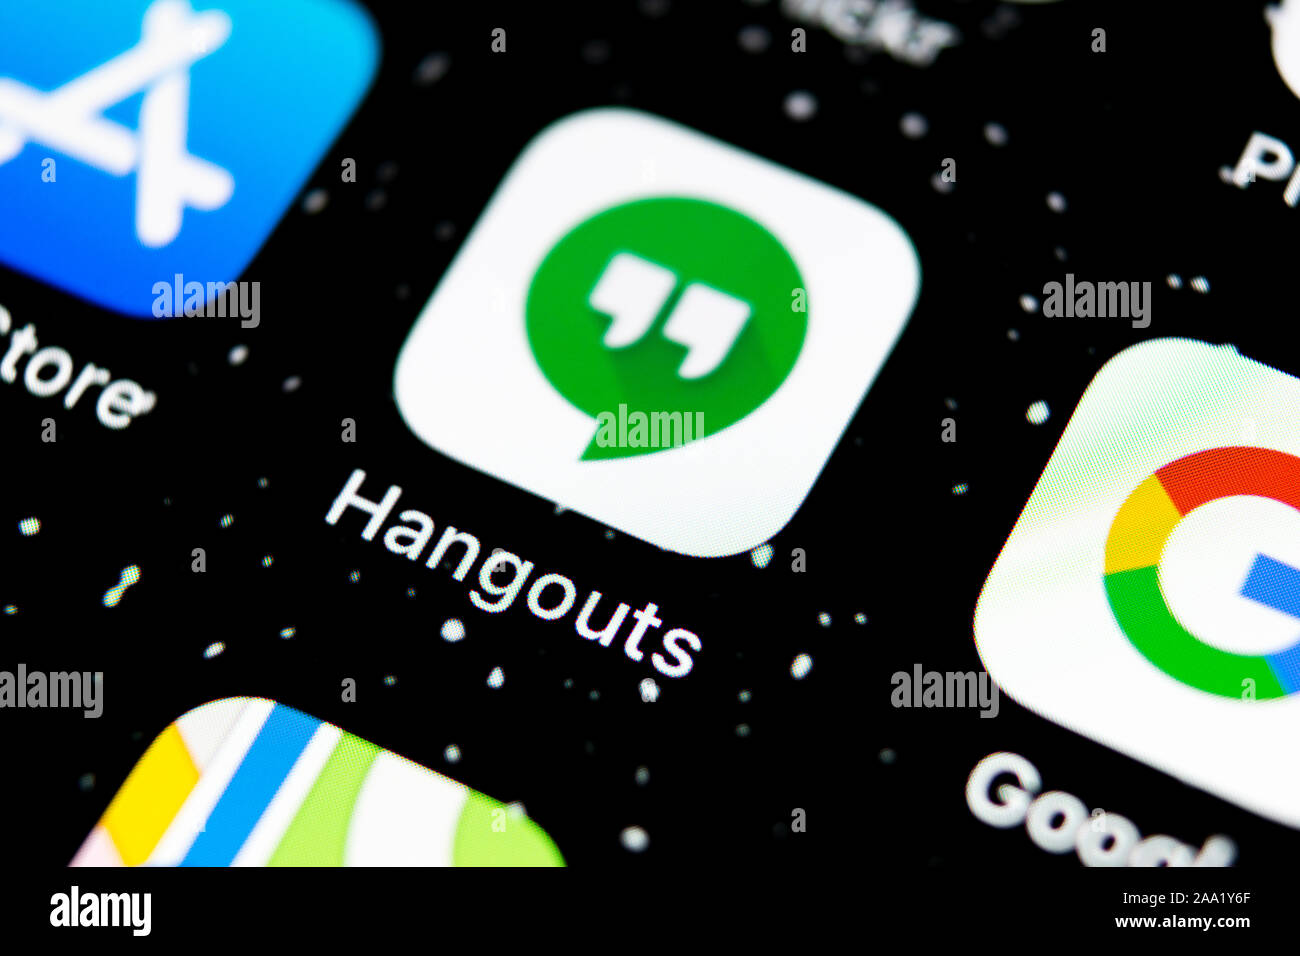 how to start google hangouts on macbook